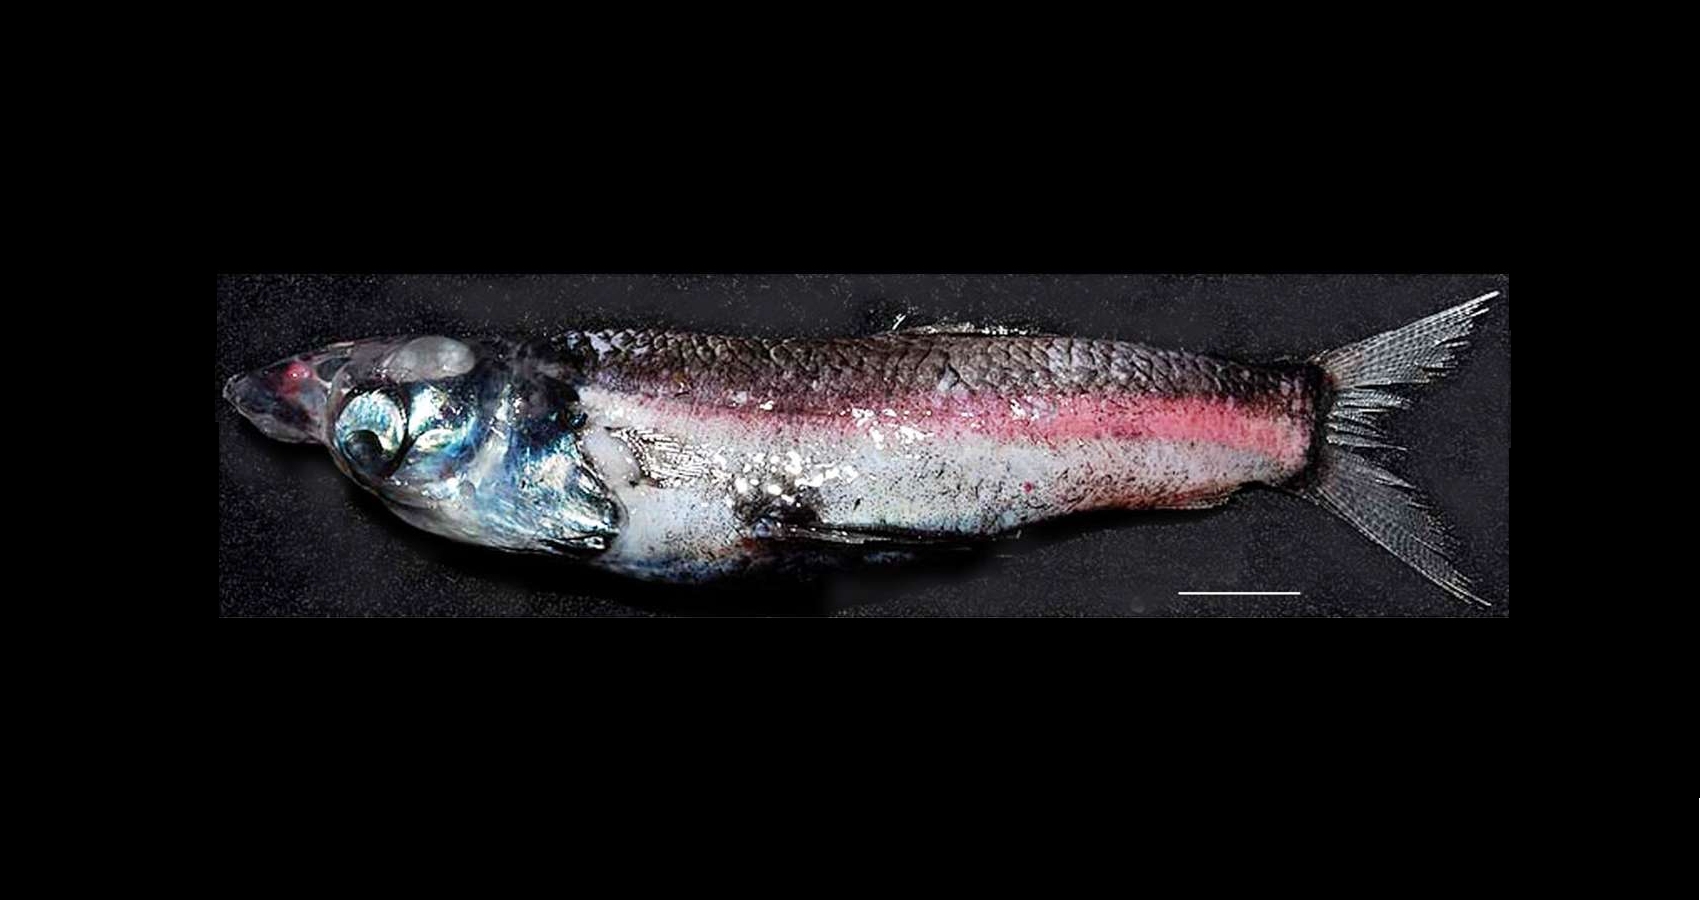 Rhynchohyalus natalensis, le poisson capturé dans la mer de Tasman, mesure 18 cm de long. La barre d'échelle vaut 2 cm. © Partridge et al., Proceedings of the Royal Society B, cc by 3.0